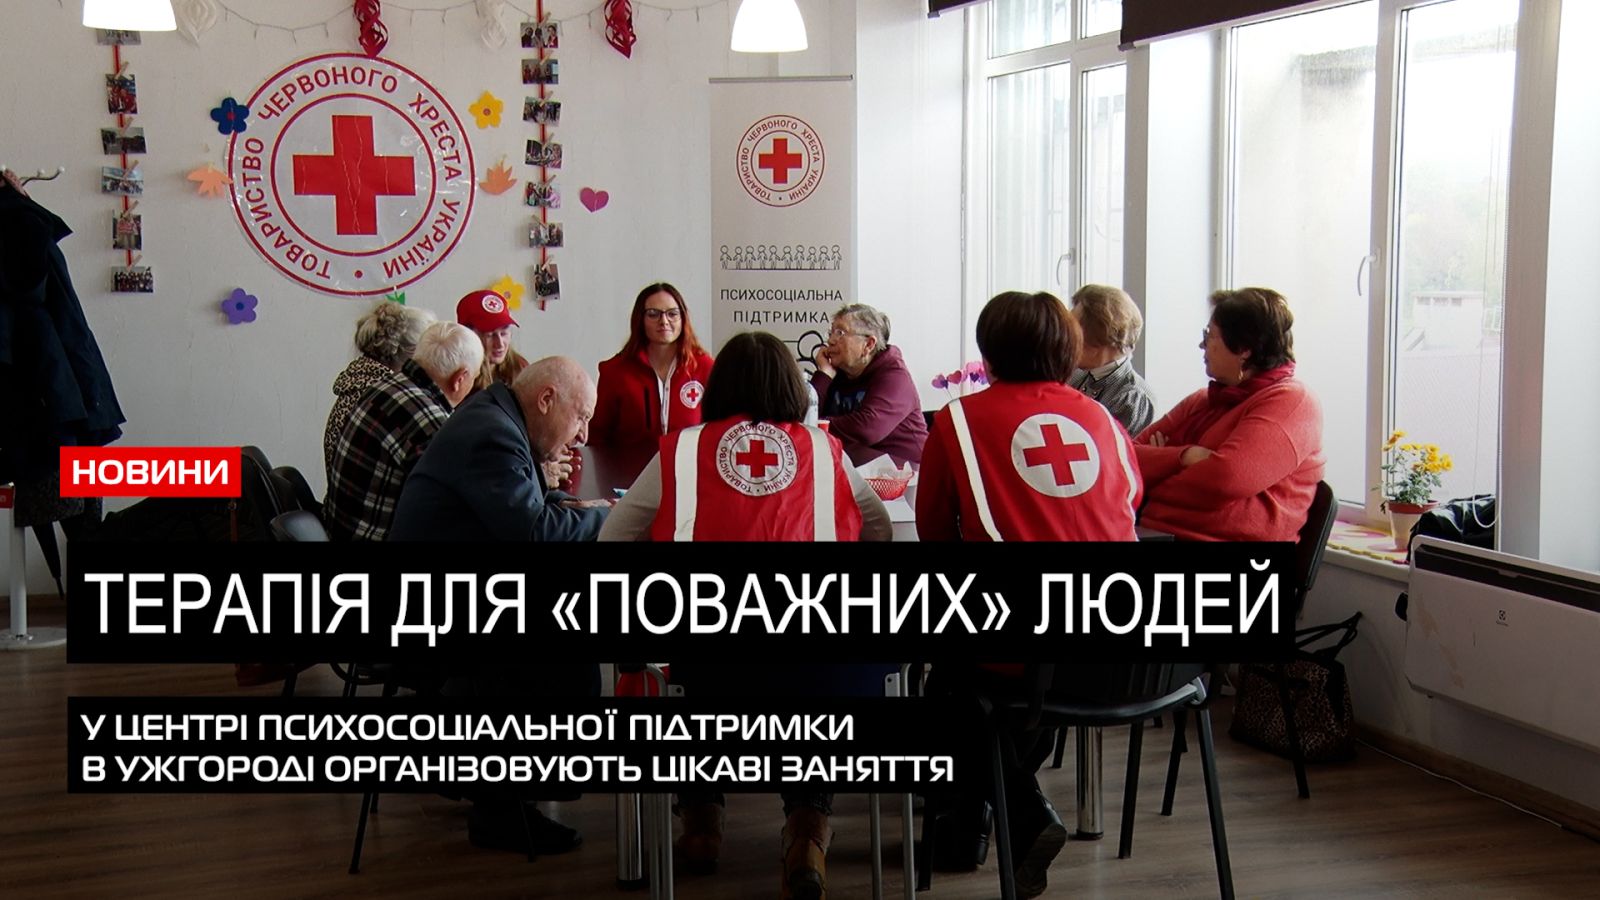  За організації Червоного Хреста: заходи для осіб поважного віку проводять в Ужгороді (ВІДЕО) 0